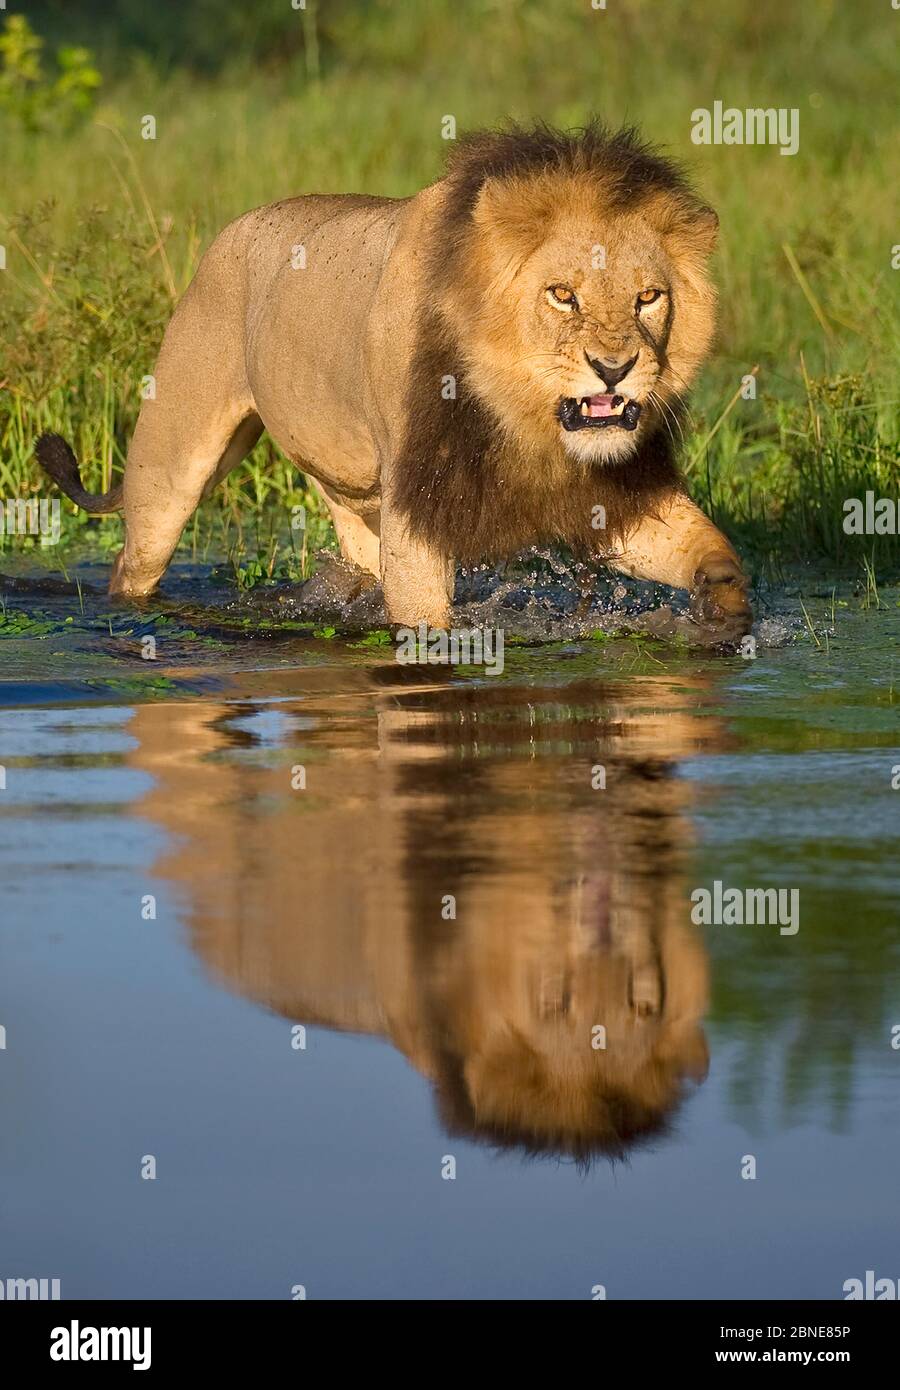 Le lion africain (Panthera leo) croissant à risque dans l'eau (Panthera leo) Delta d'Okavango, Botswana. Banque D'Images